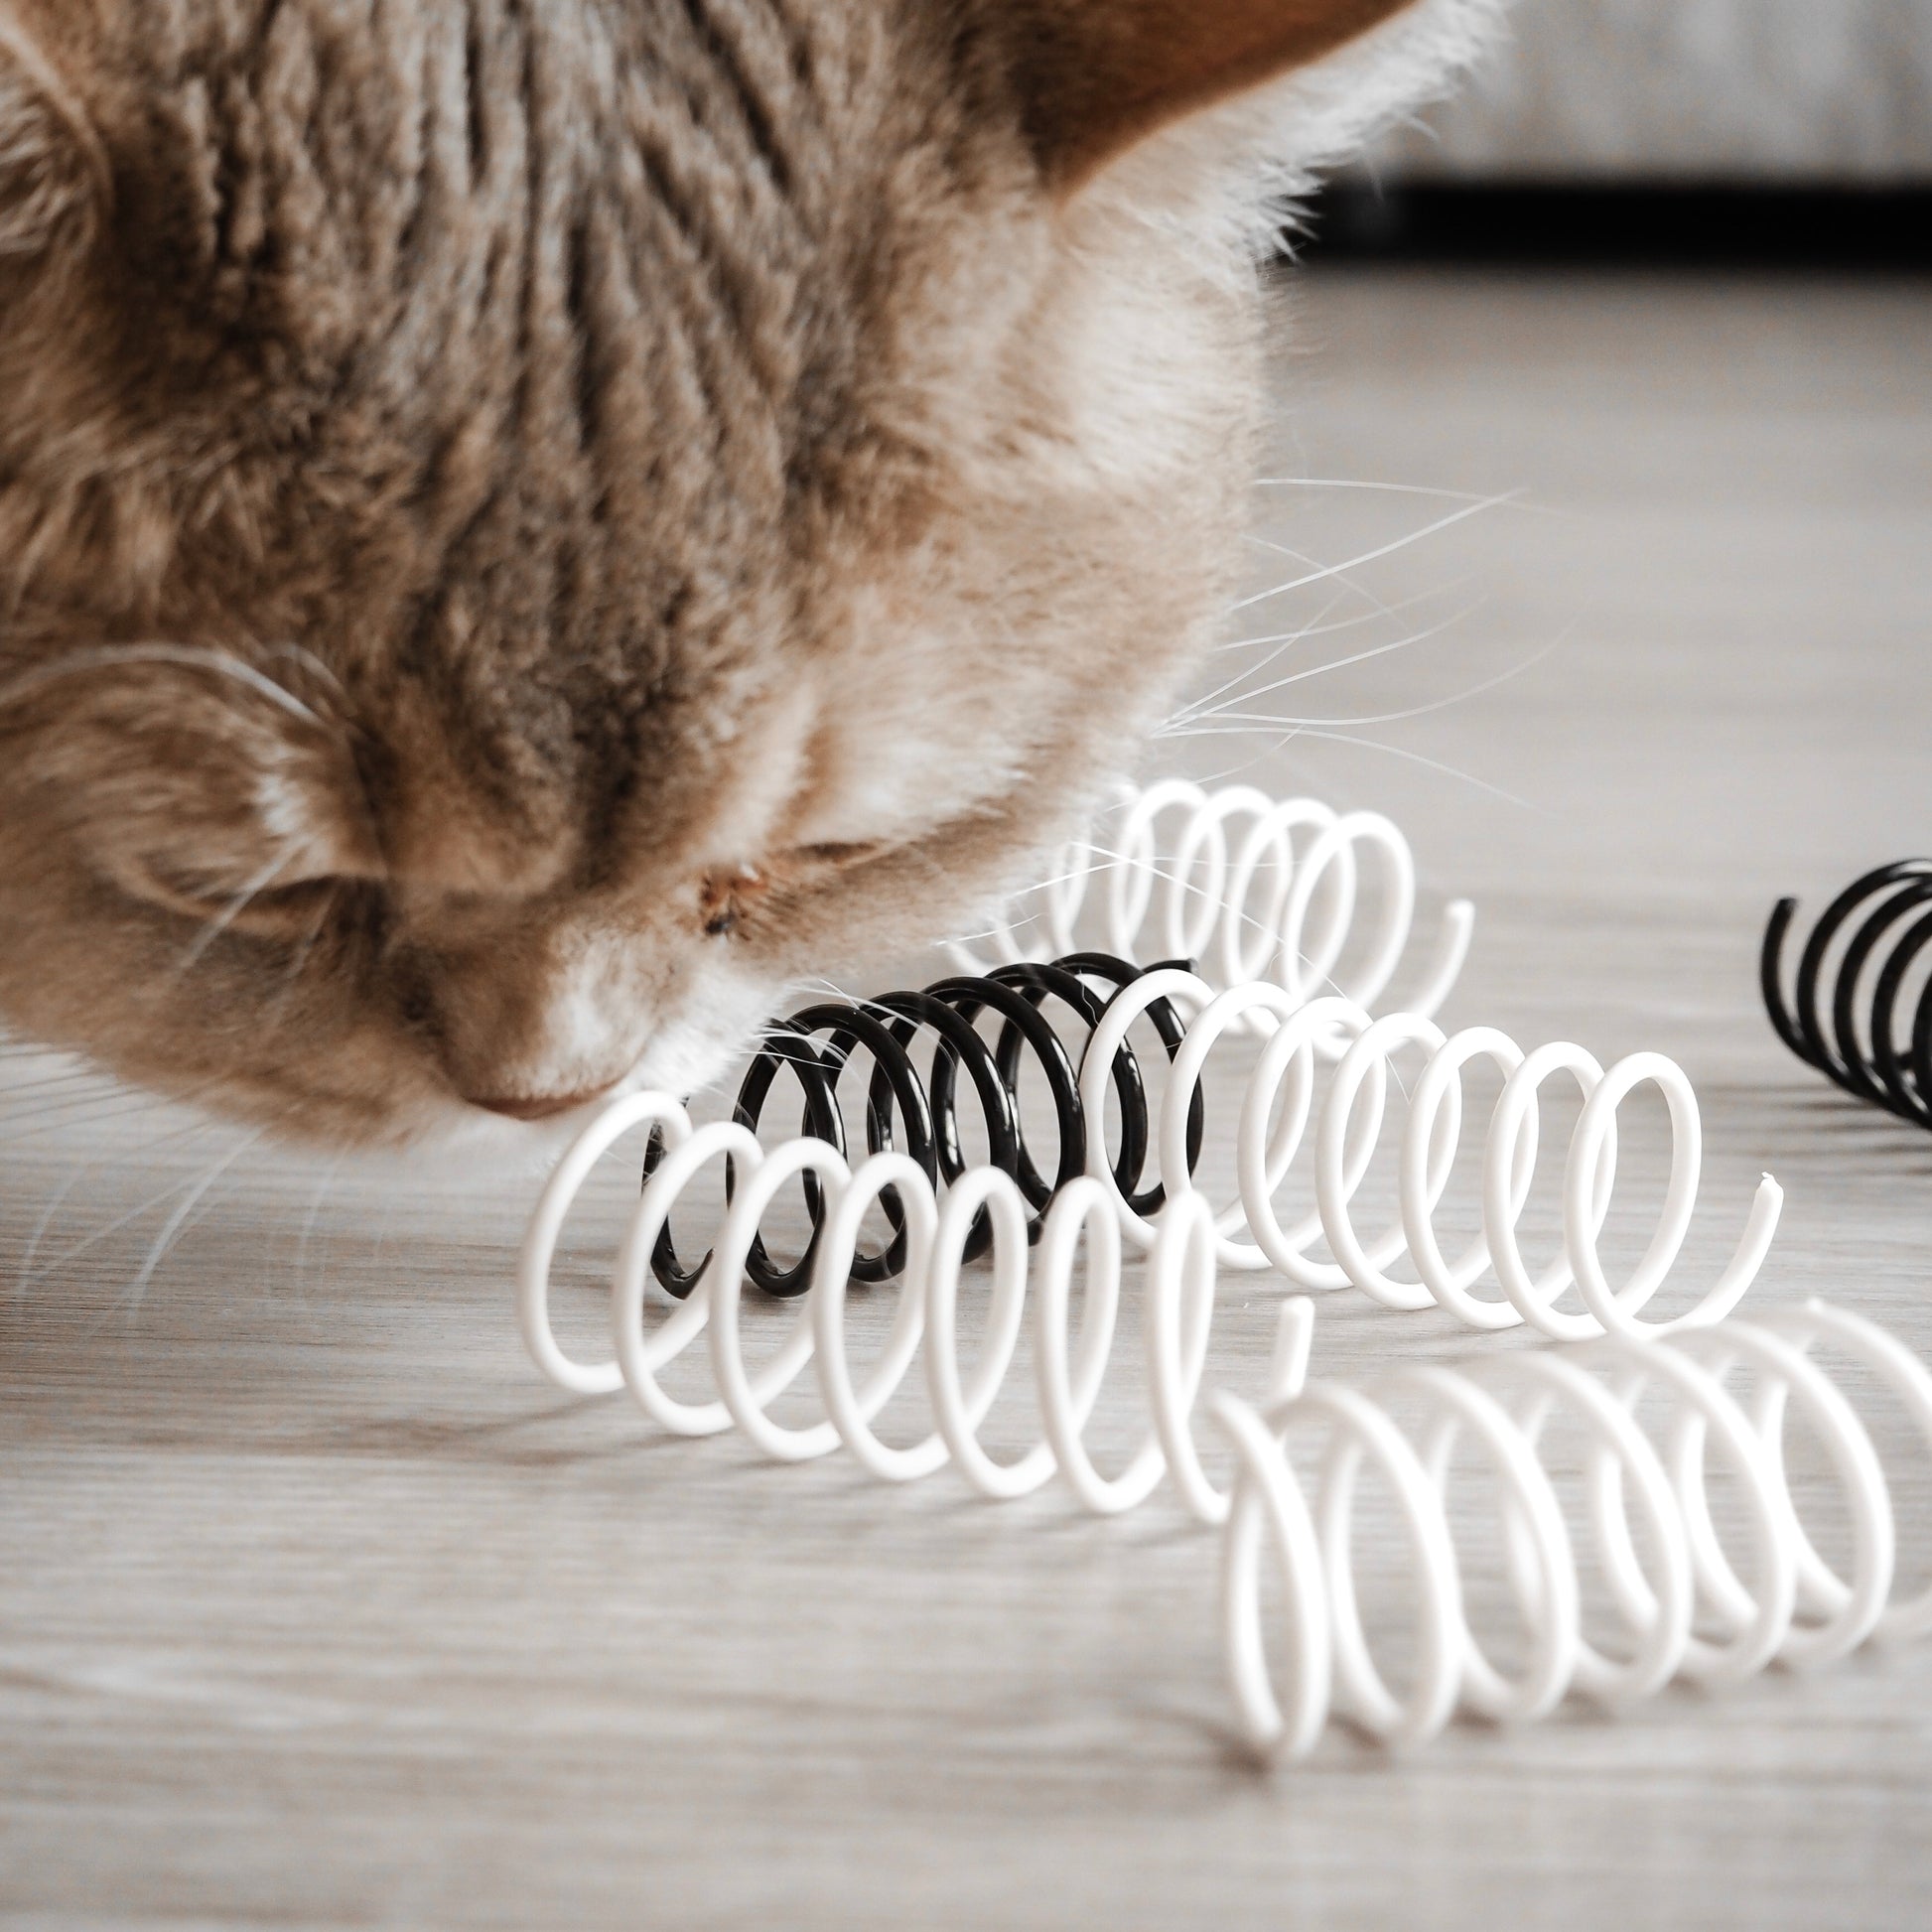 Katze riecht an Spiralfeder Spielzeug für Katzen in schwarz und weiß.